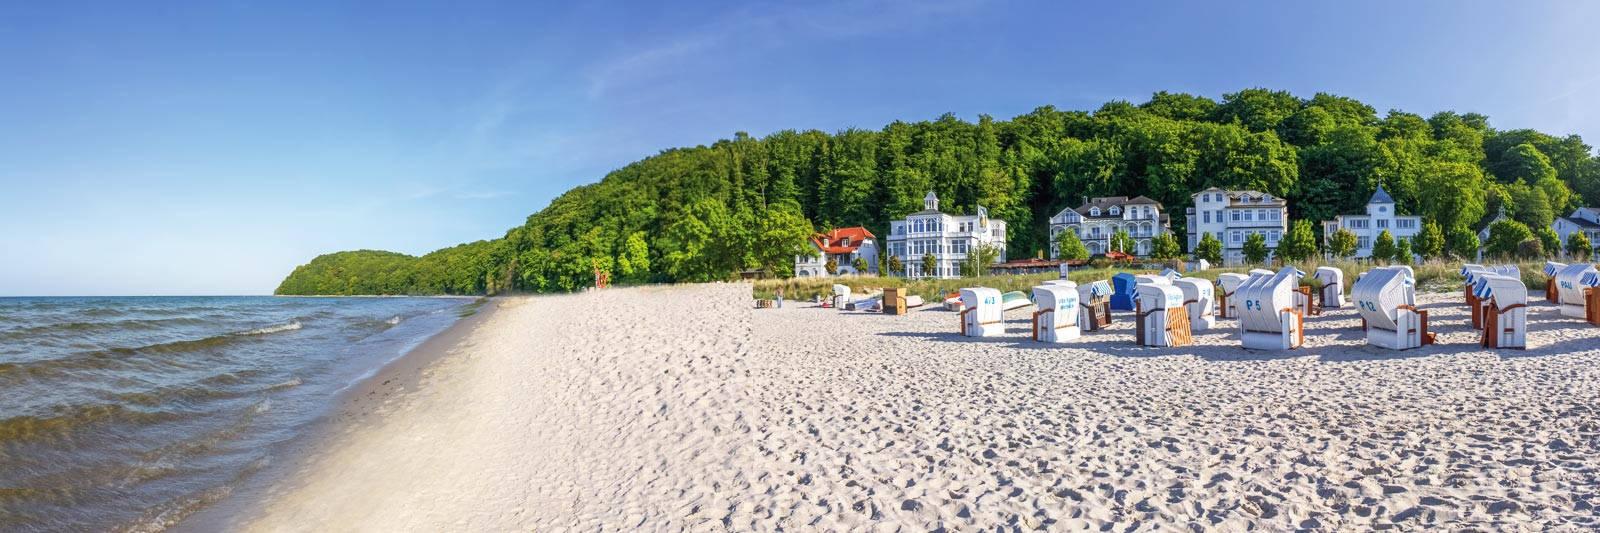 1.460 Ferienwohnungen und Ferienhäuser in der Mecklenburgischen Schweiz - tourist-online.de